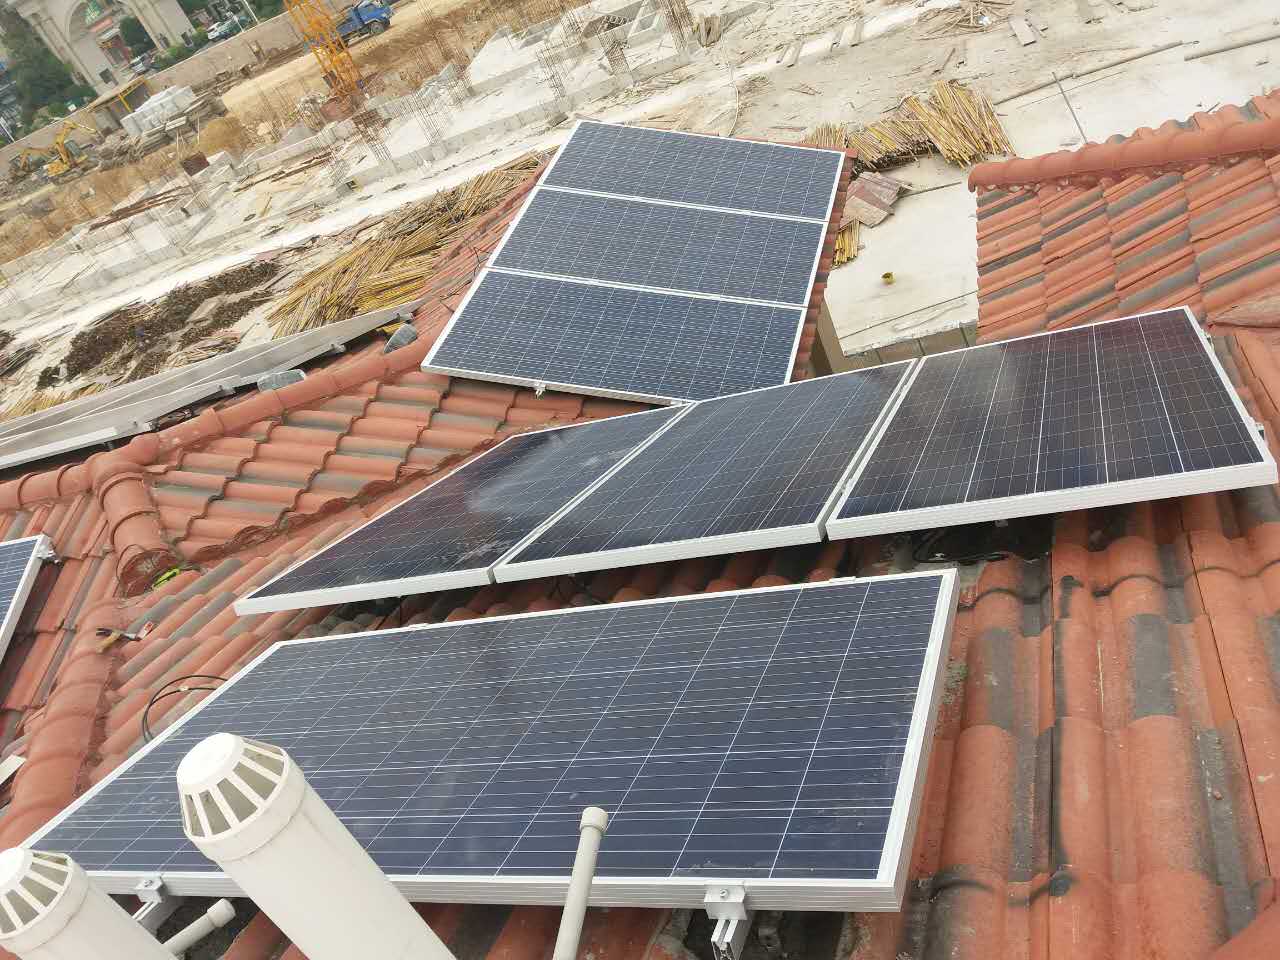 屋顶分布式光伏发电系统株洲光伏屋顶分布式光伏太阳能发电系统图片